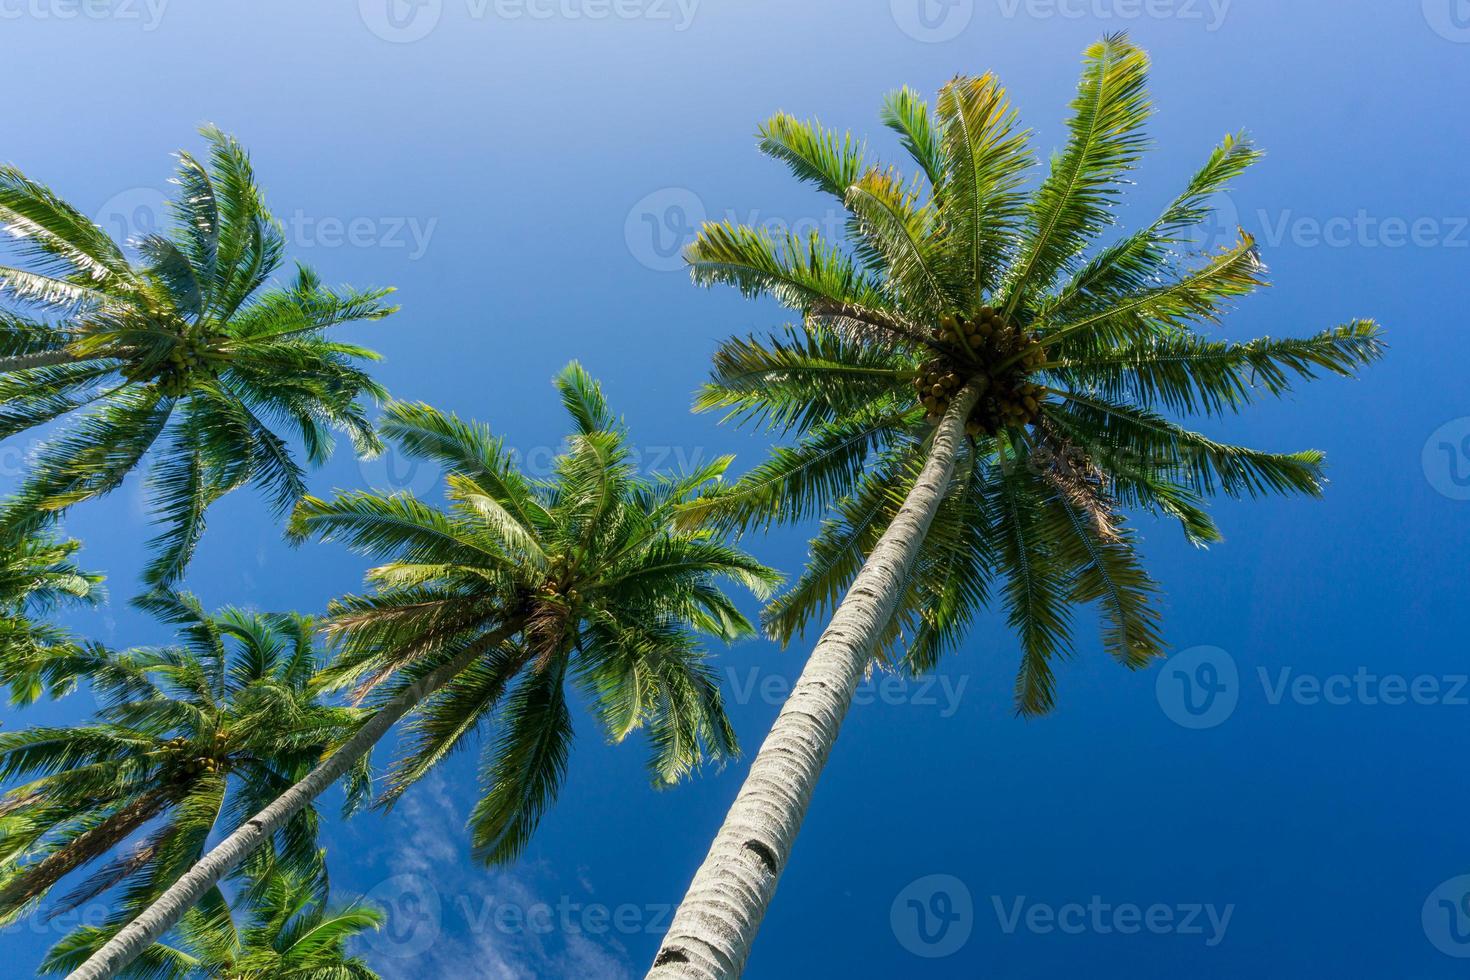 belle vue du matin en indonésie. cocotiers alignés sous le ciel bleu photo